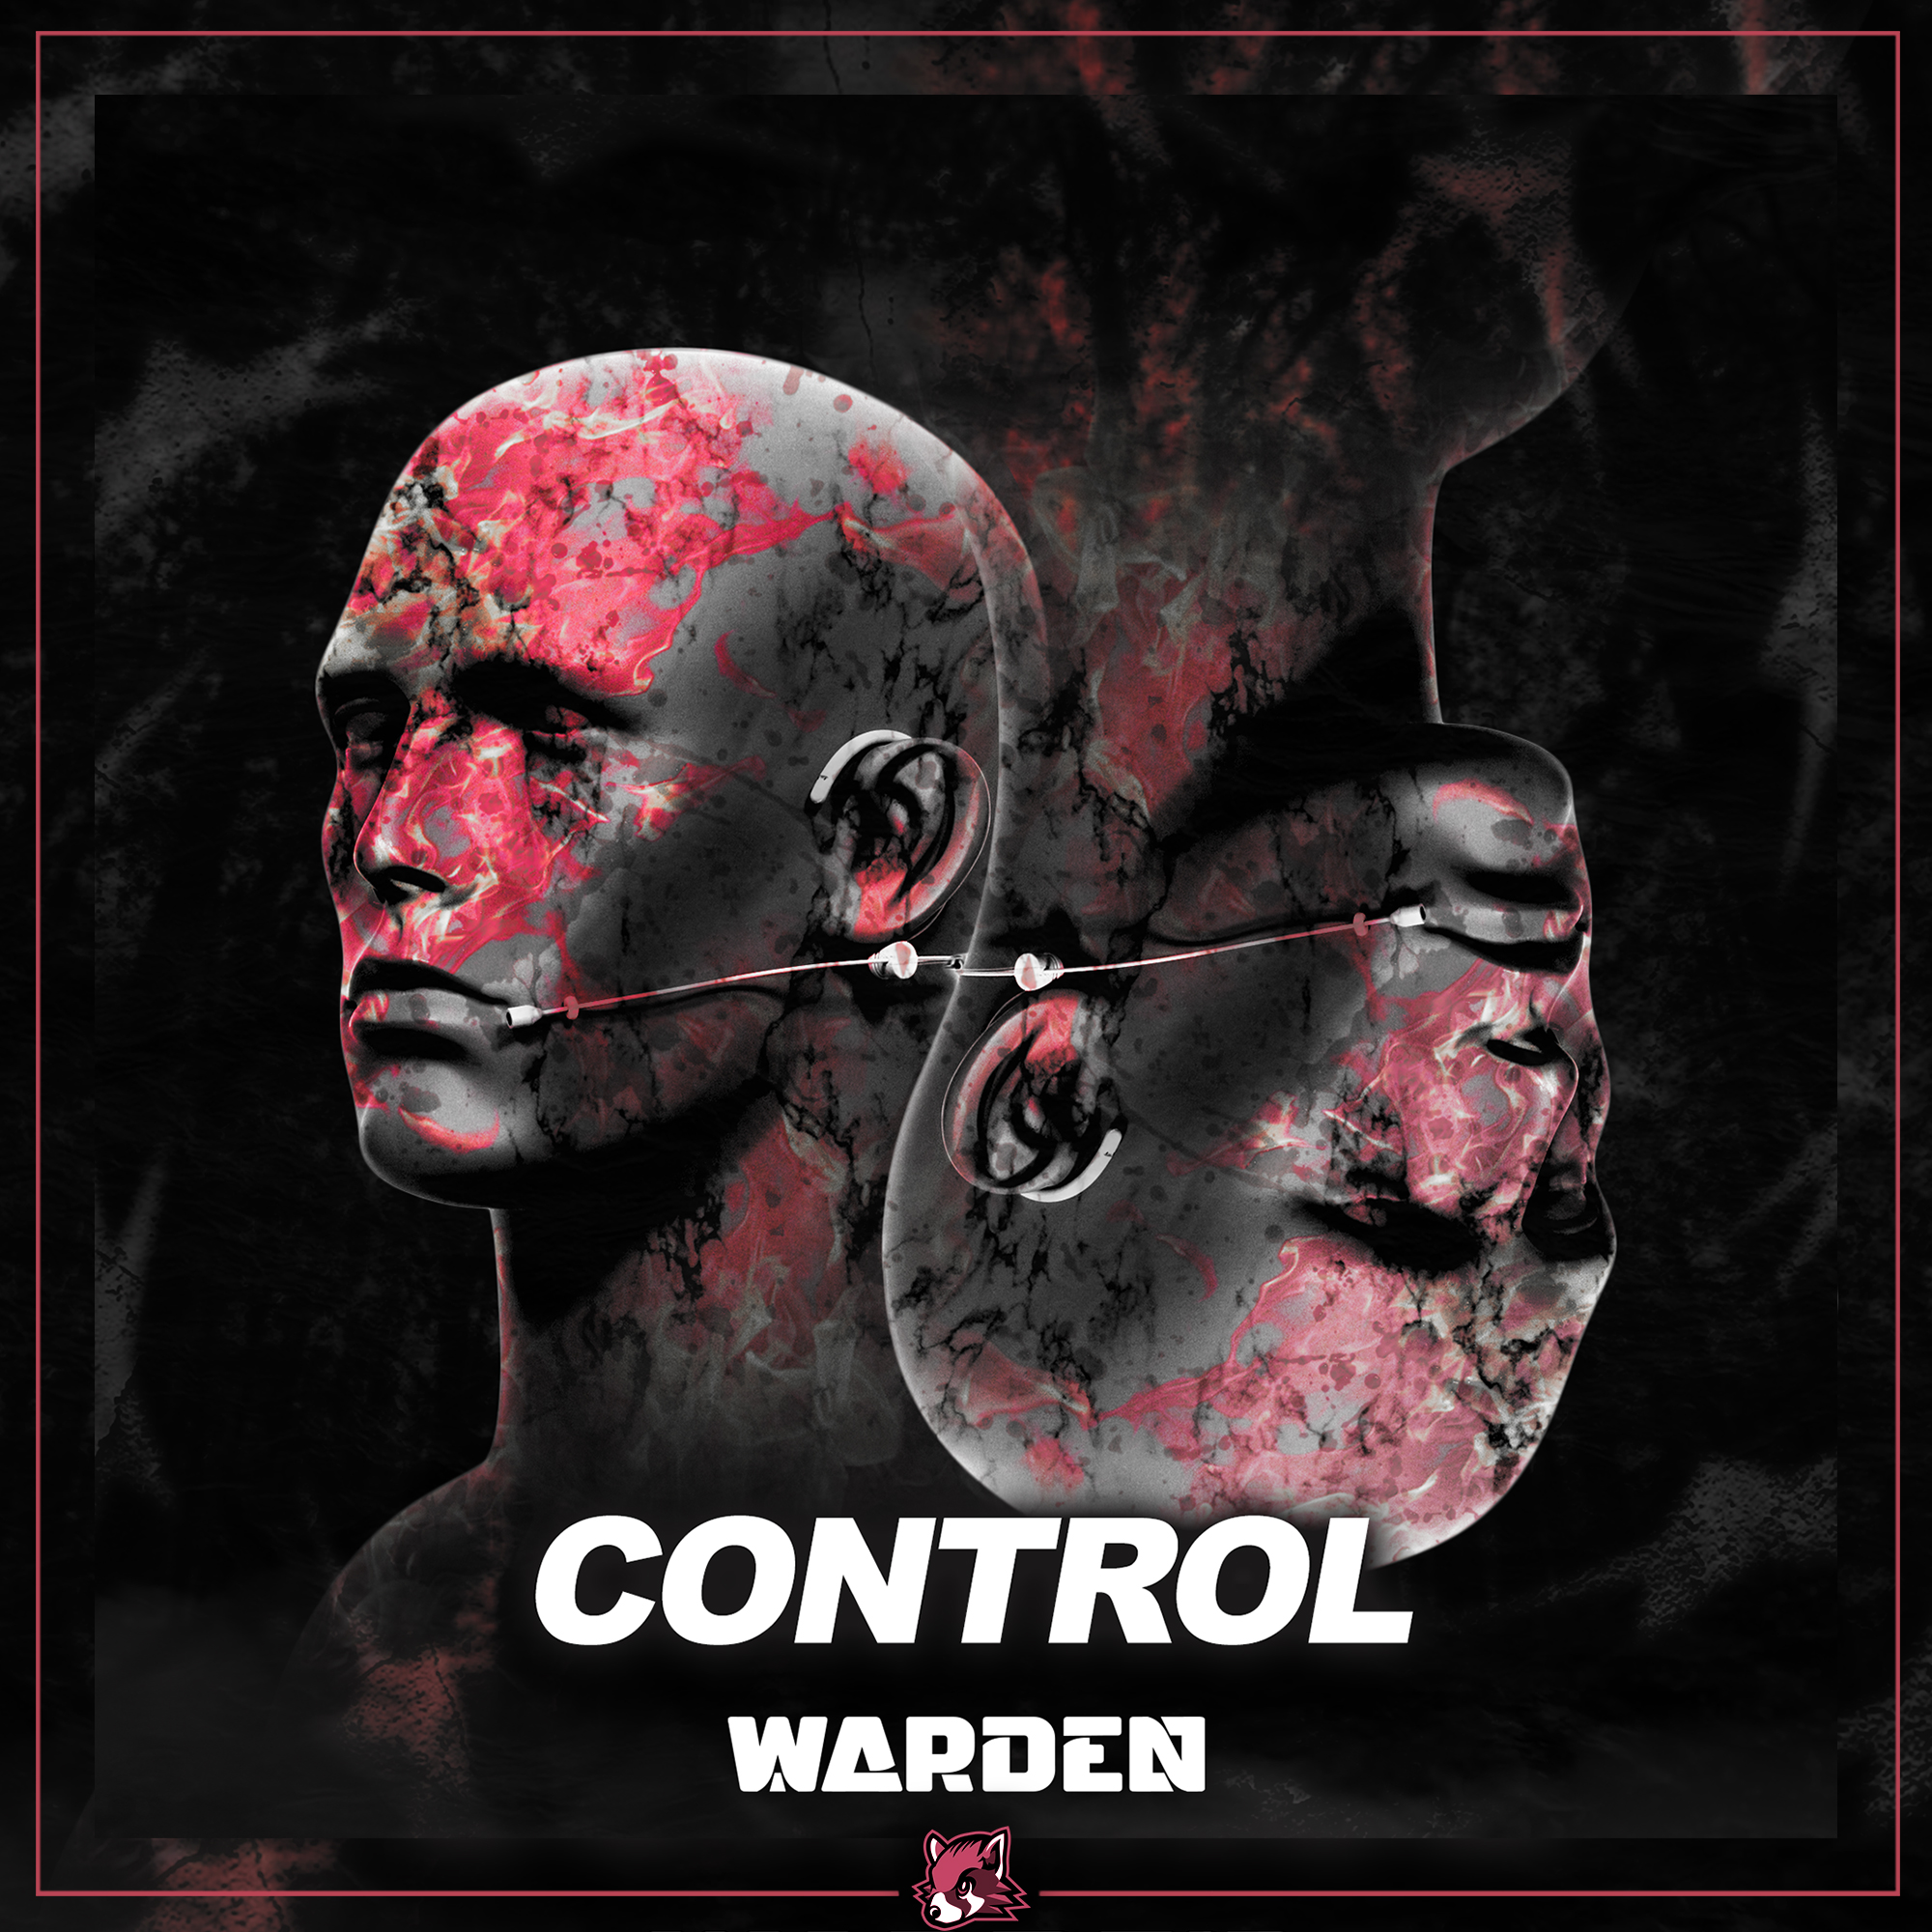 Warden Control